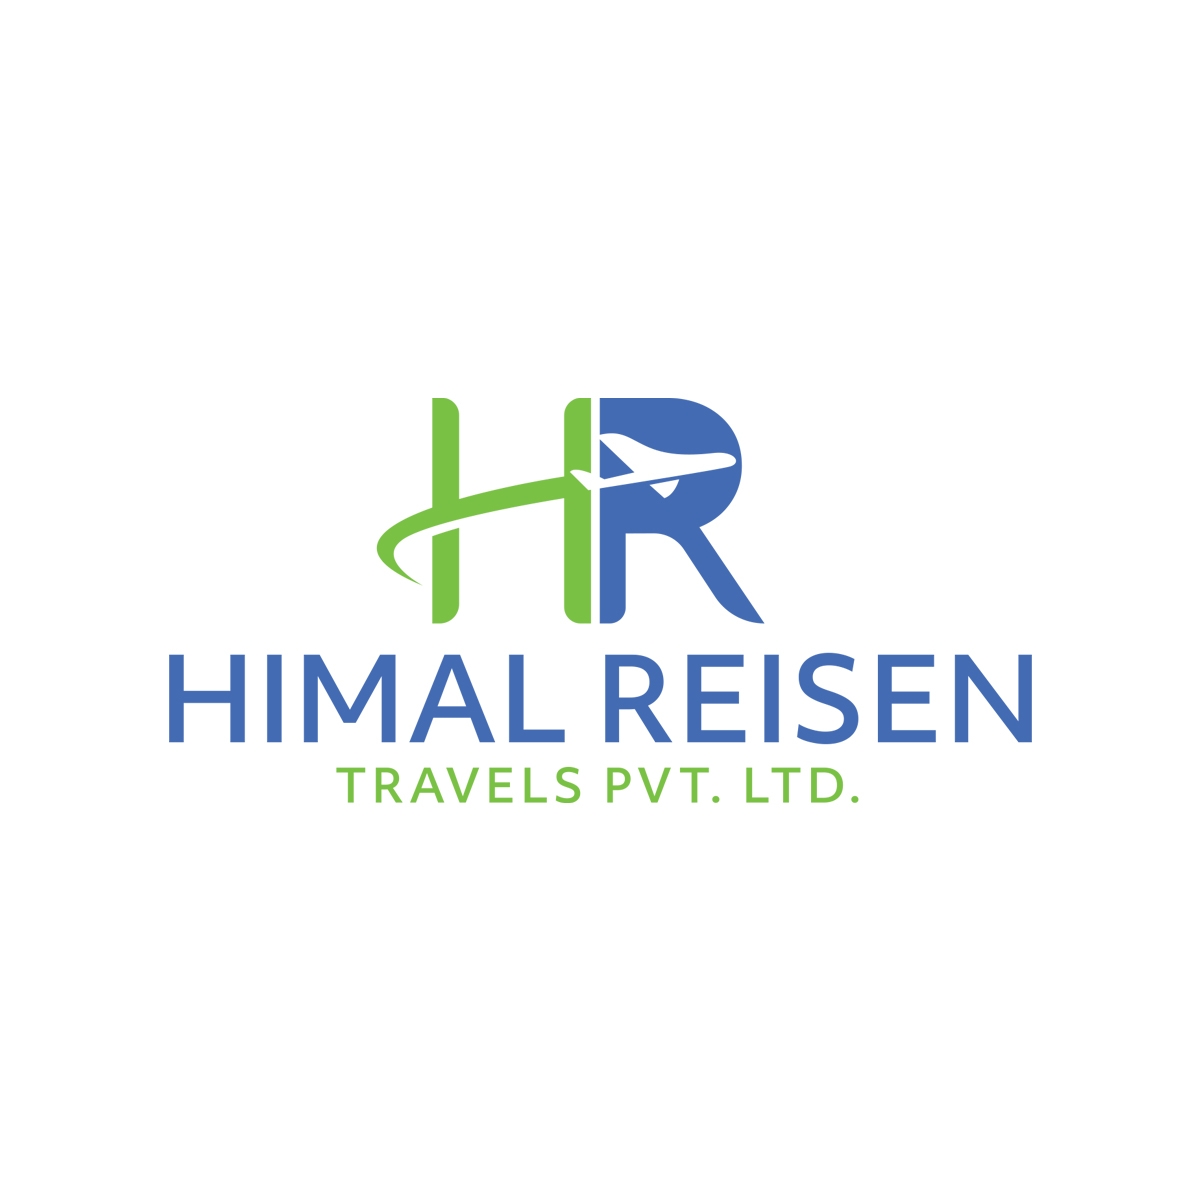 Himal Reisen Travel & Tour